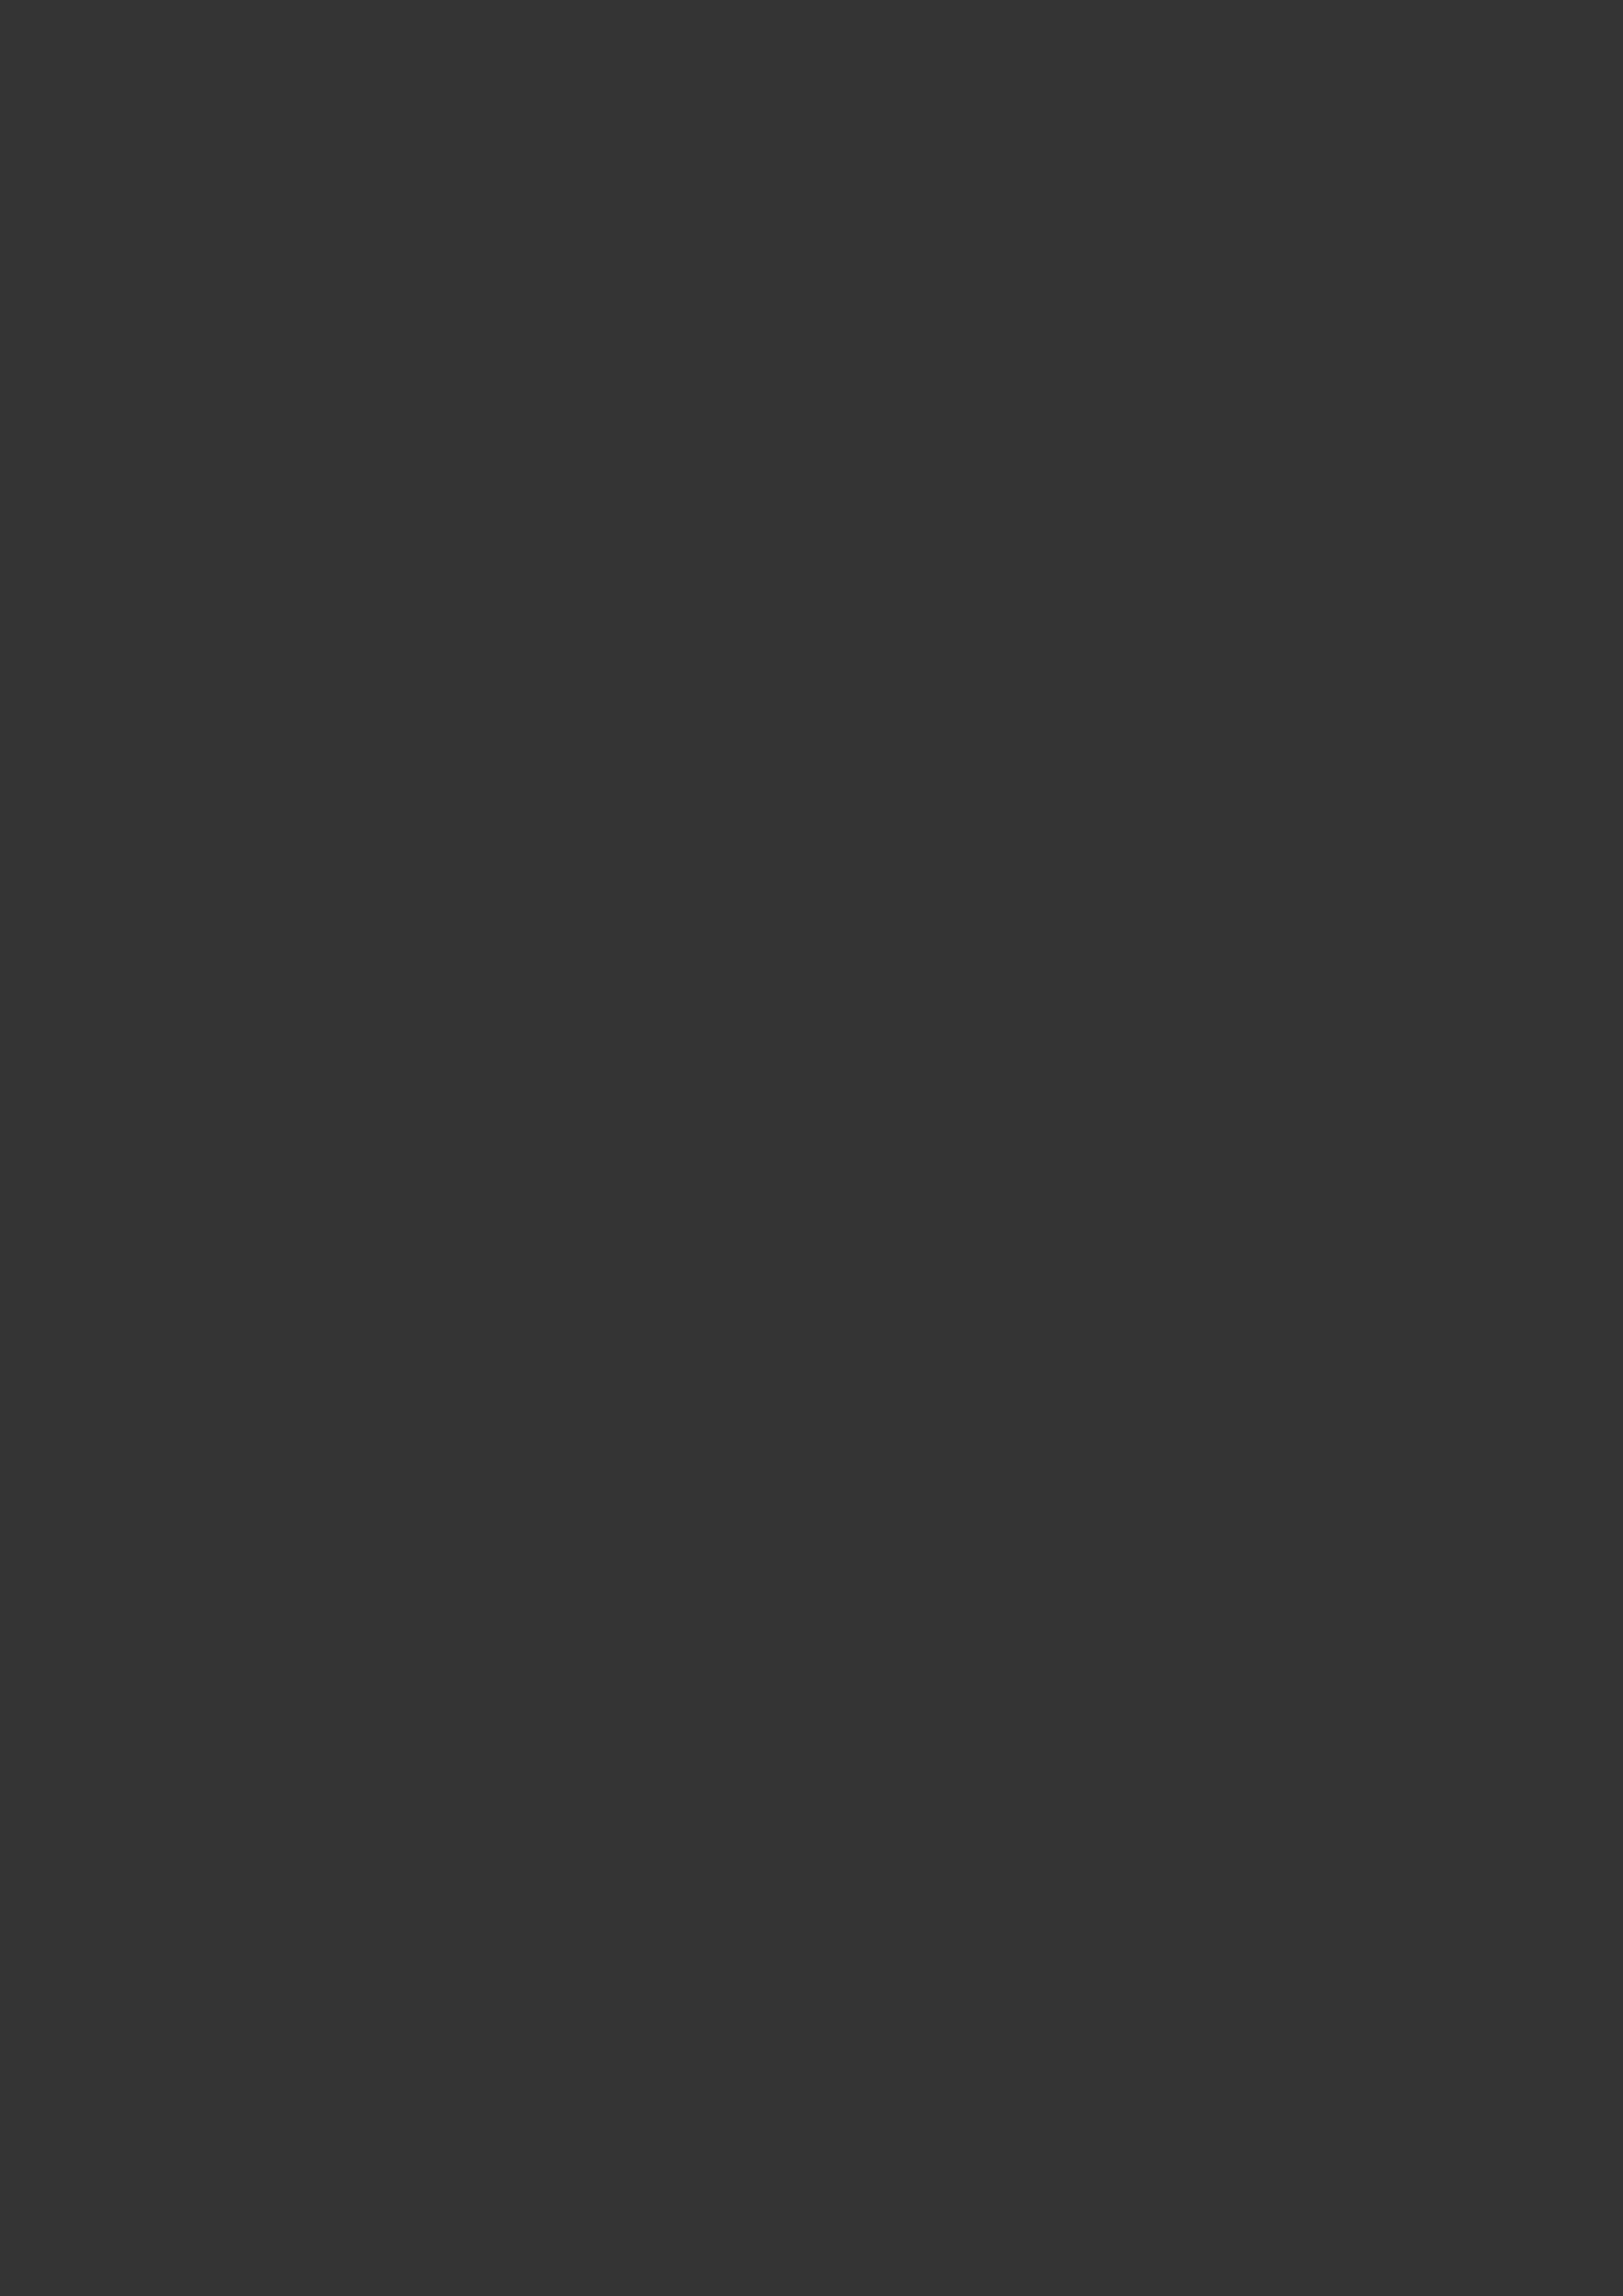 ПВХ пленка СЕРЫЙ ГРАФИТ европейского качества для мебели и дверей от компании ЛАМИС | Каталог ПВХ пленок MULTIMA by IMAWELL 